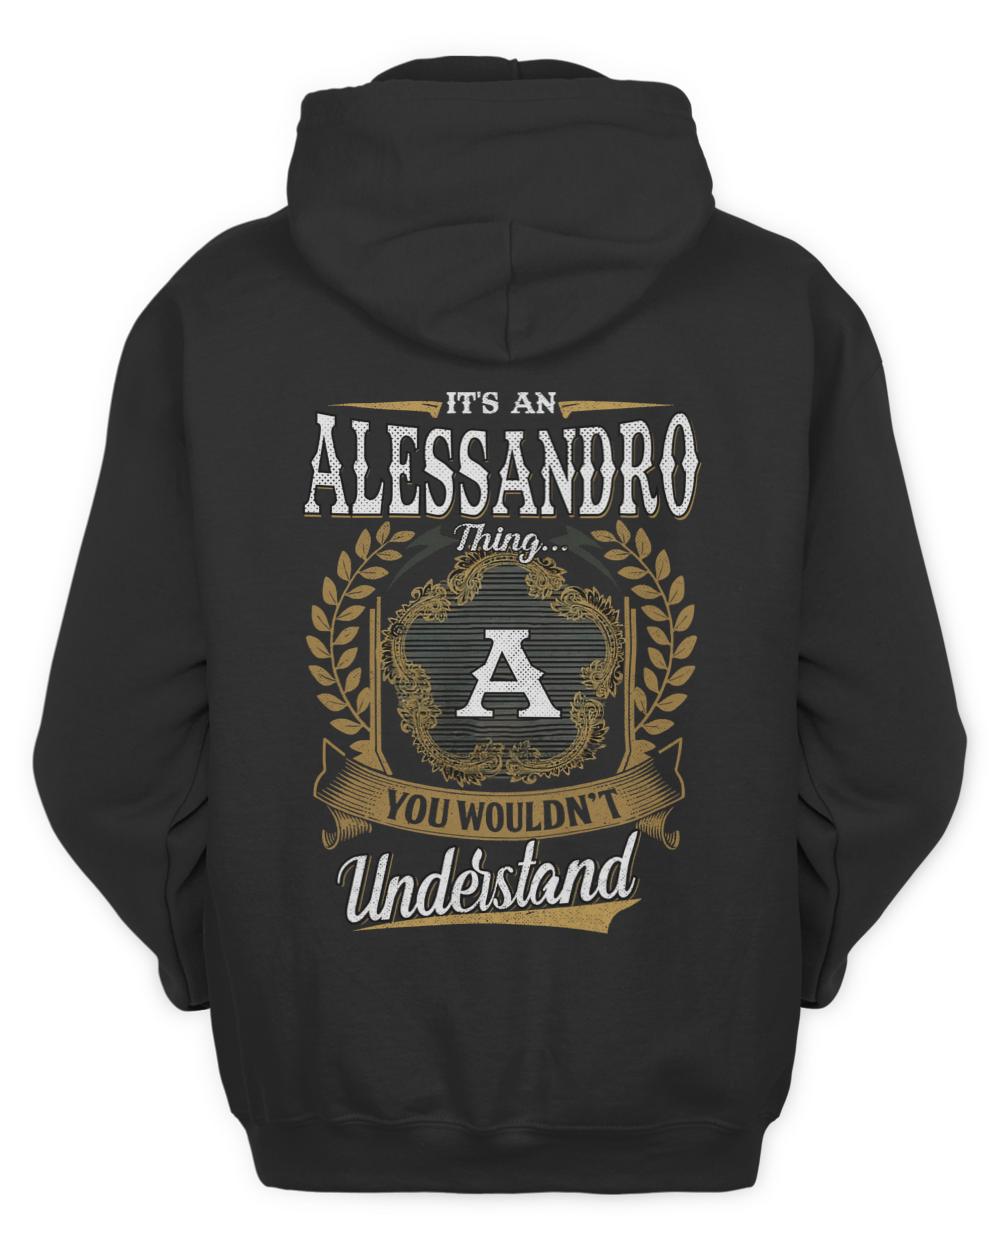 ALESSANDRO-13K-1-01